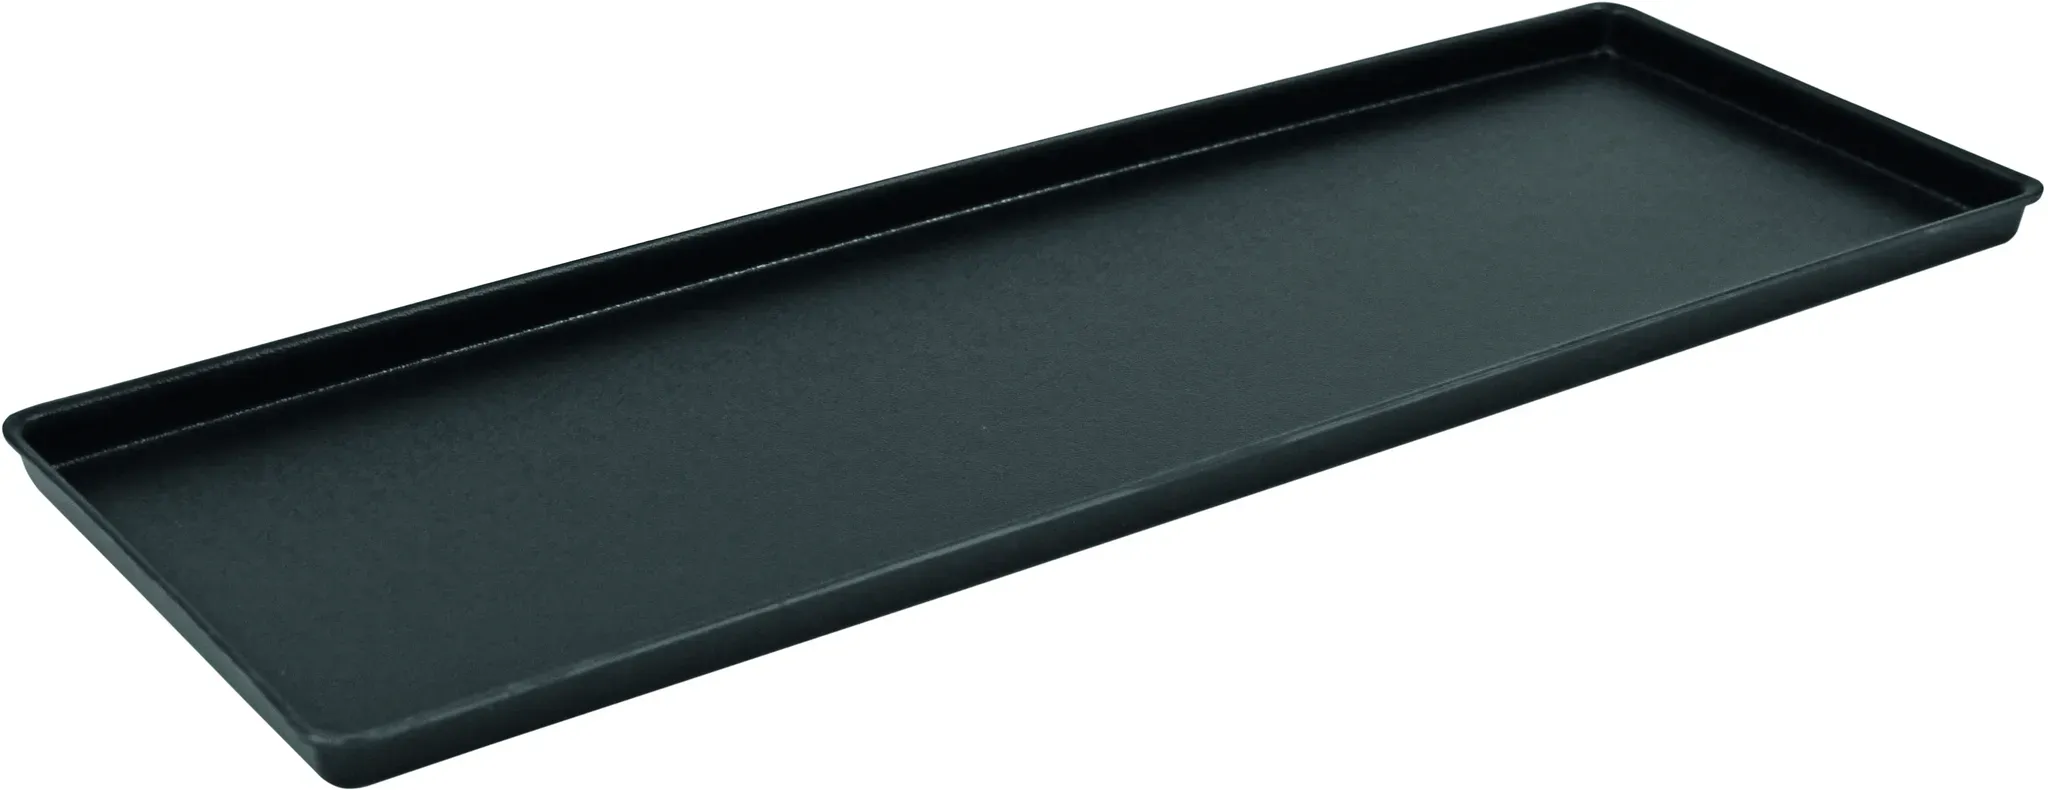 Gastro Schneider ABS Auslagetablett schwarz 195 x 580 x 20 mm, genarbte Oberfläche | Mindestbestellmenge 4 Stück